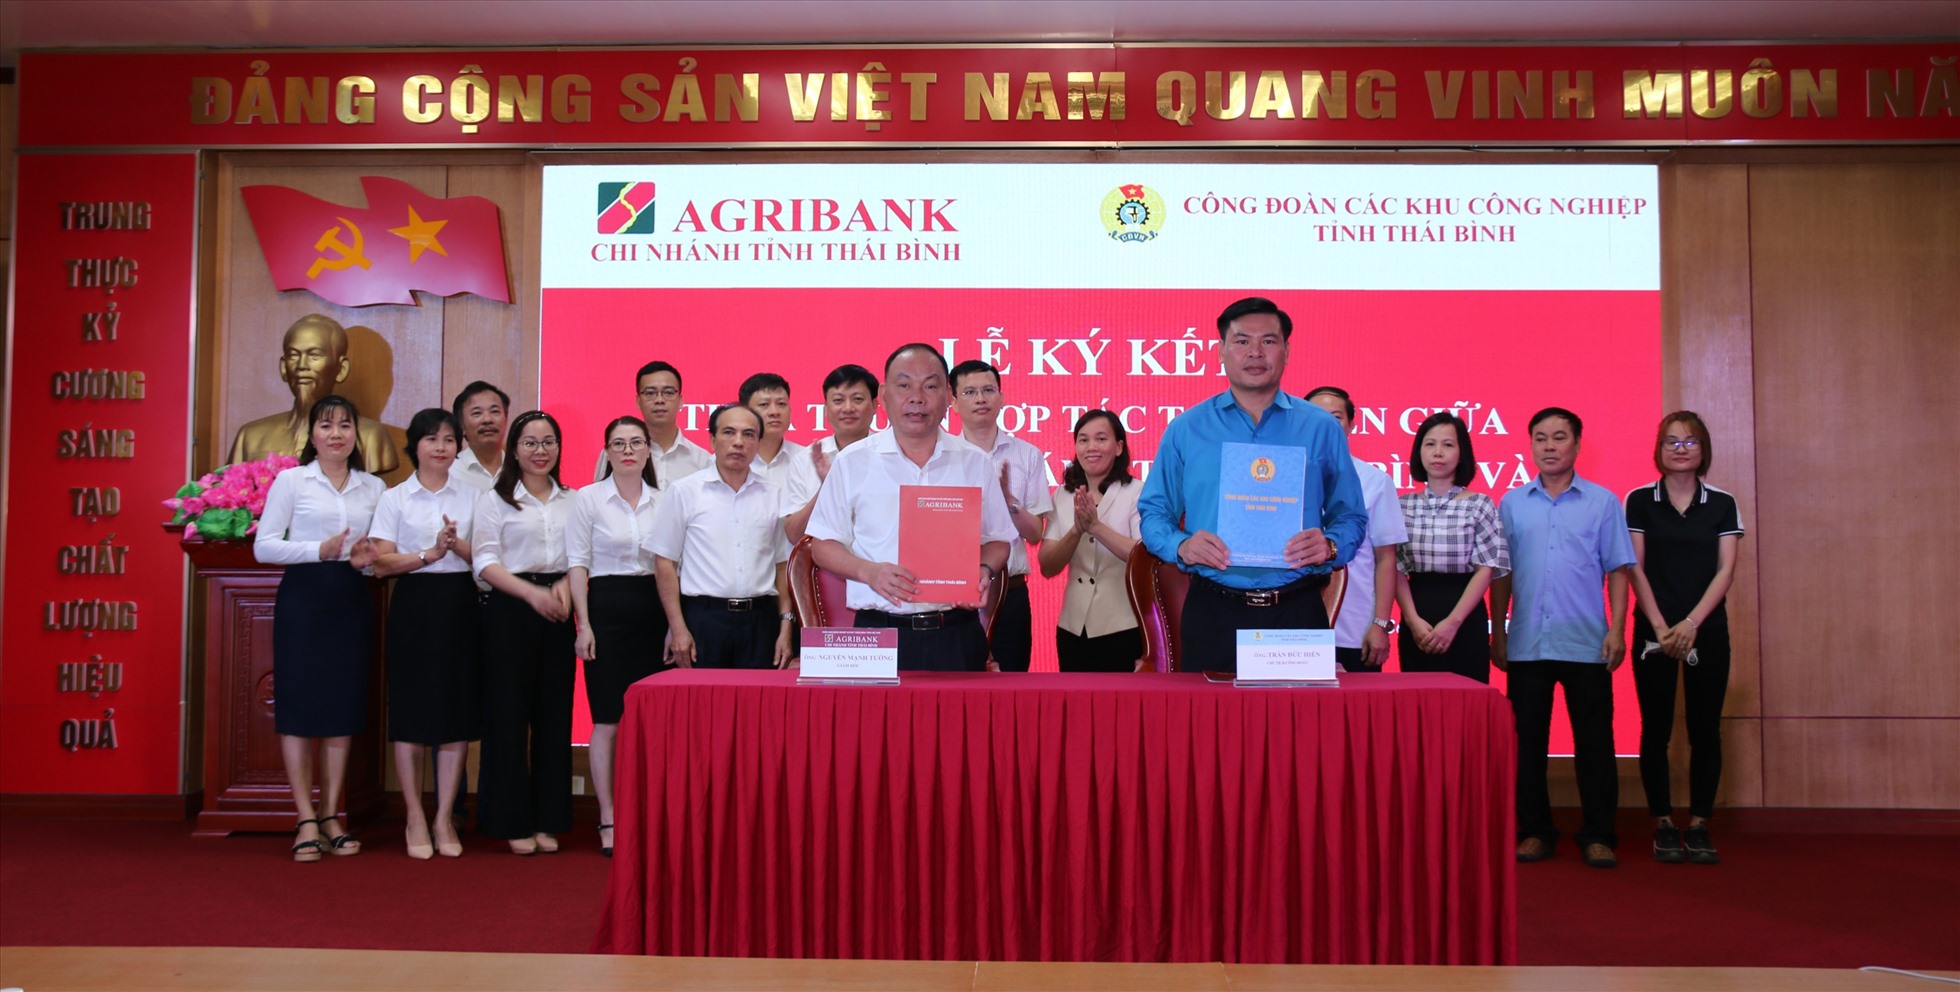 Ông Nguyễn Mạnh Tường - Giám đốc Agribank chi nhánh Thái Bình cam kết sẽ cùng với các đơn vị trong khu công nghiệp phục vụ tốt nhất các chương trình phúc lợi cho công nhân lao động. Ảnh: B.M